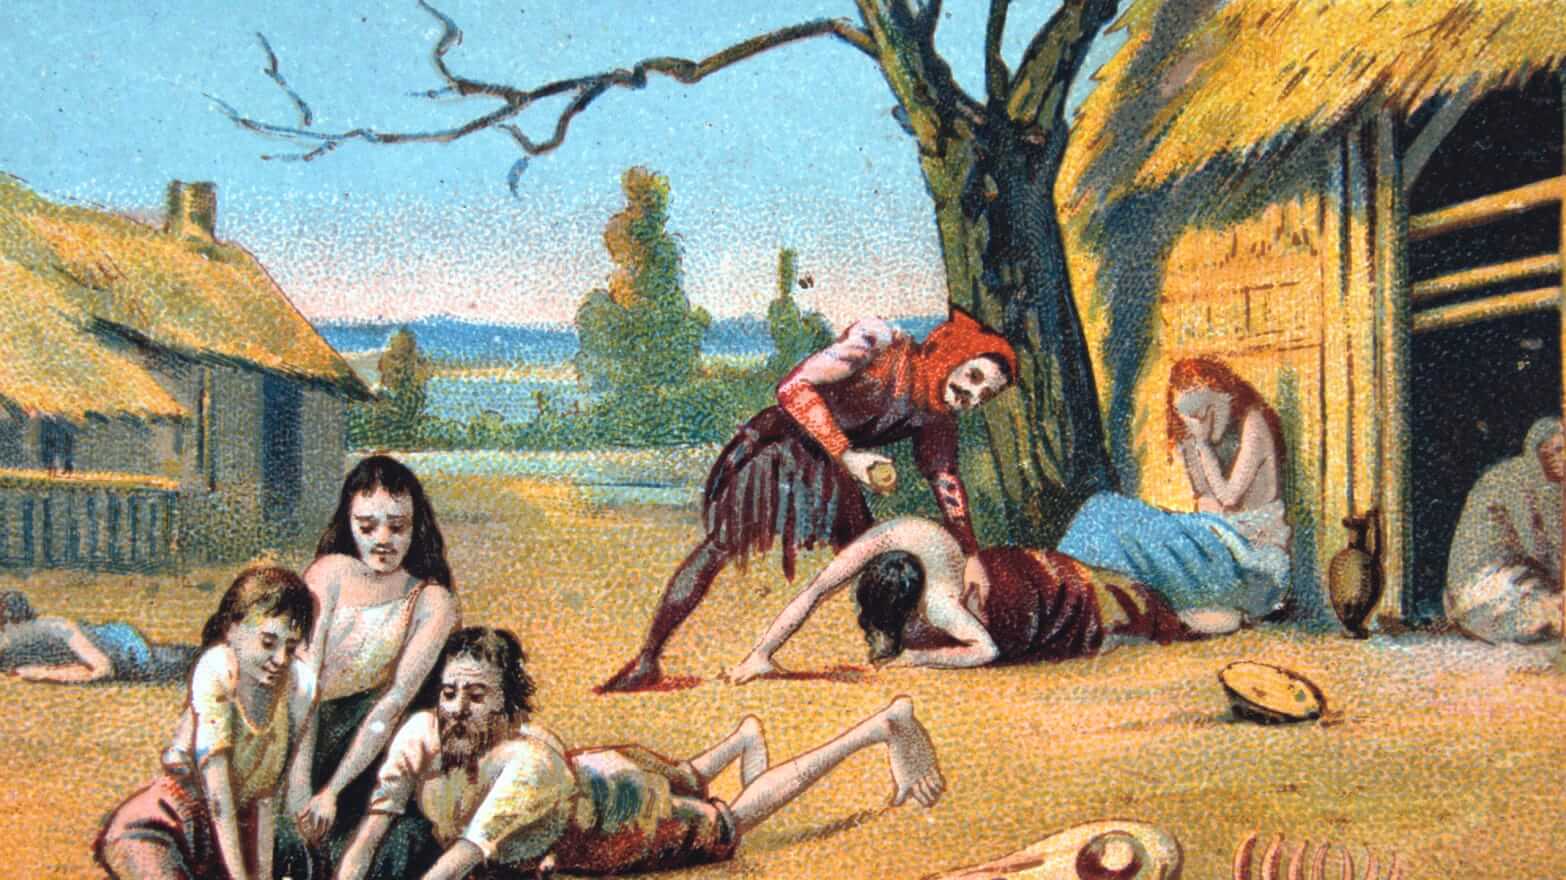 Neden yüzlerce yıl önce Avrupa'da ortaya çıkan kitlesel açlık insan?